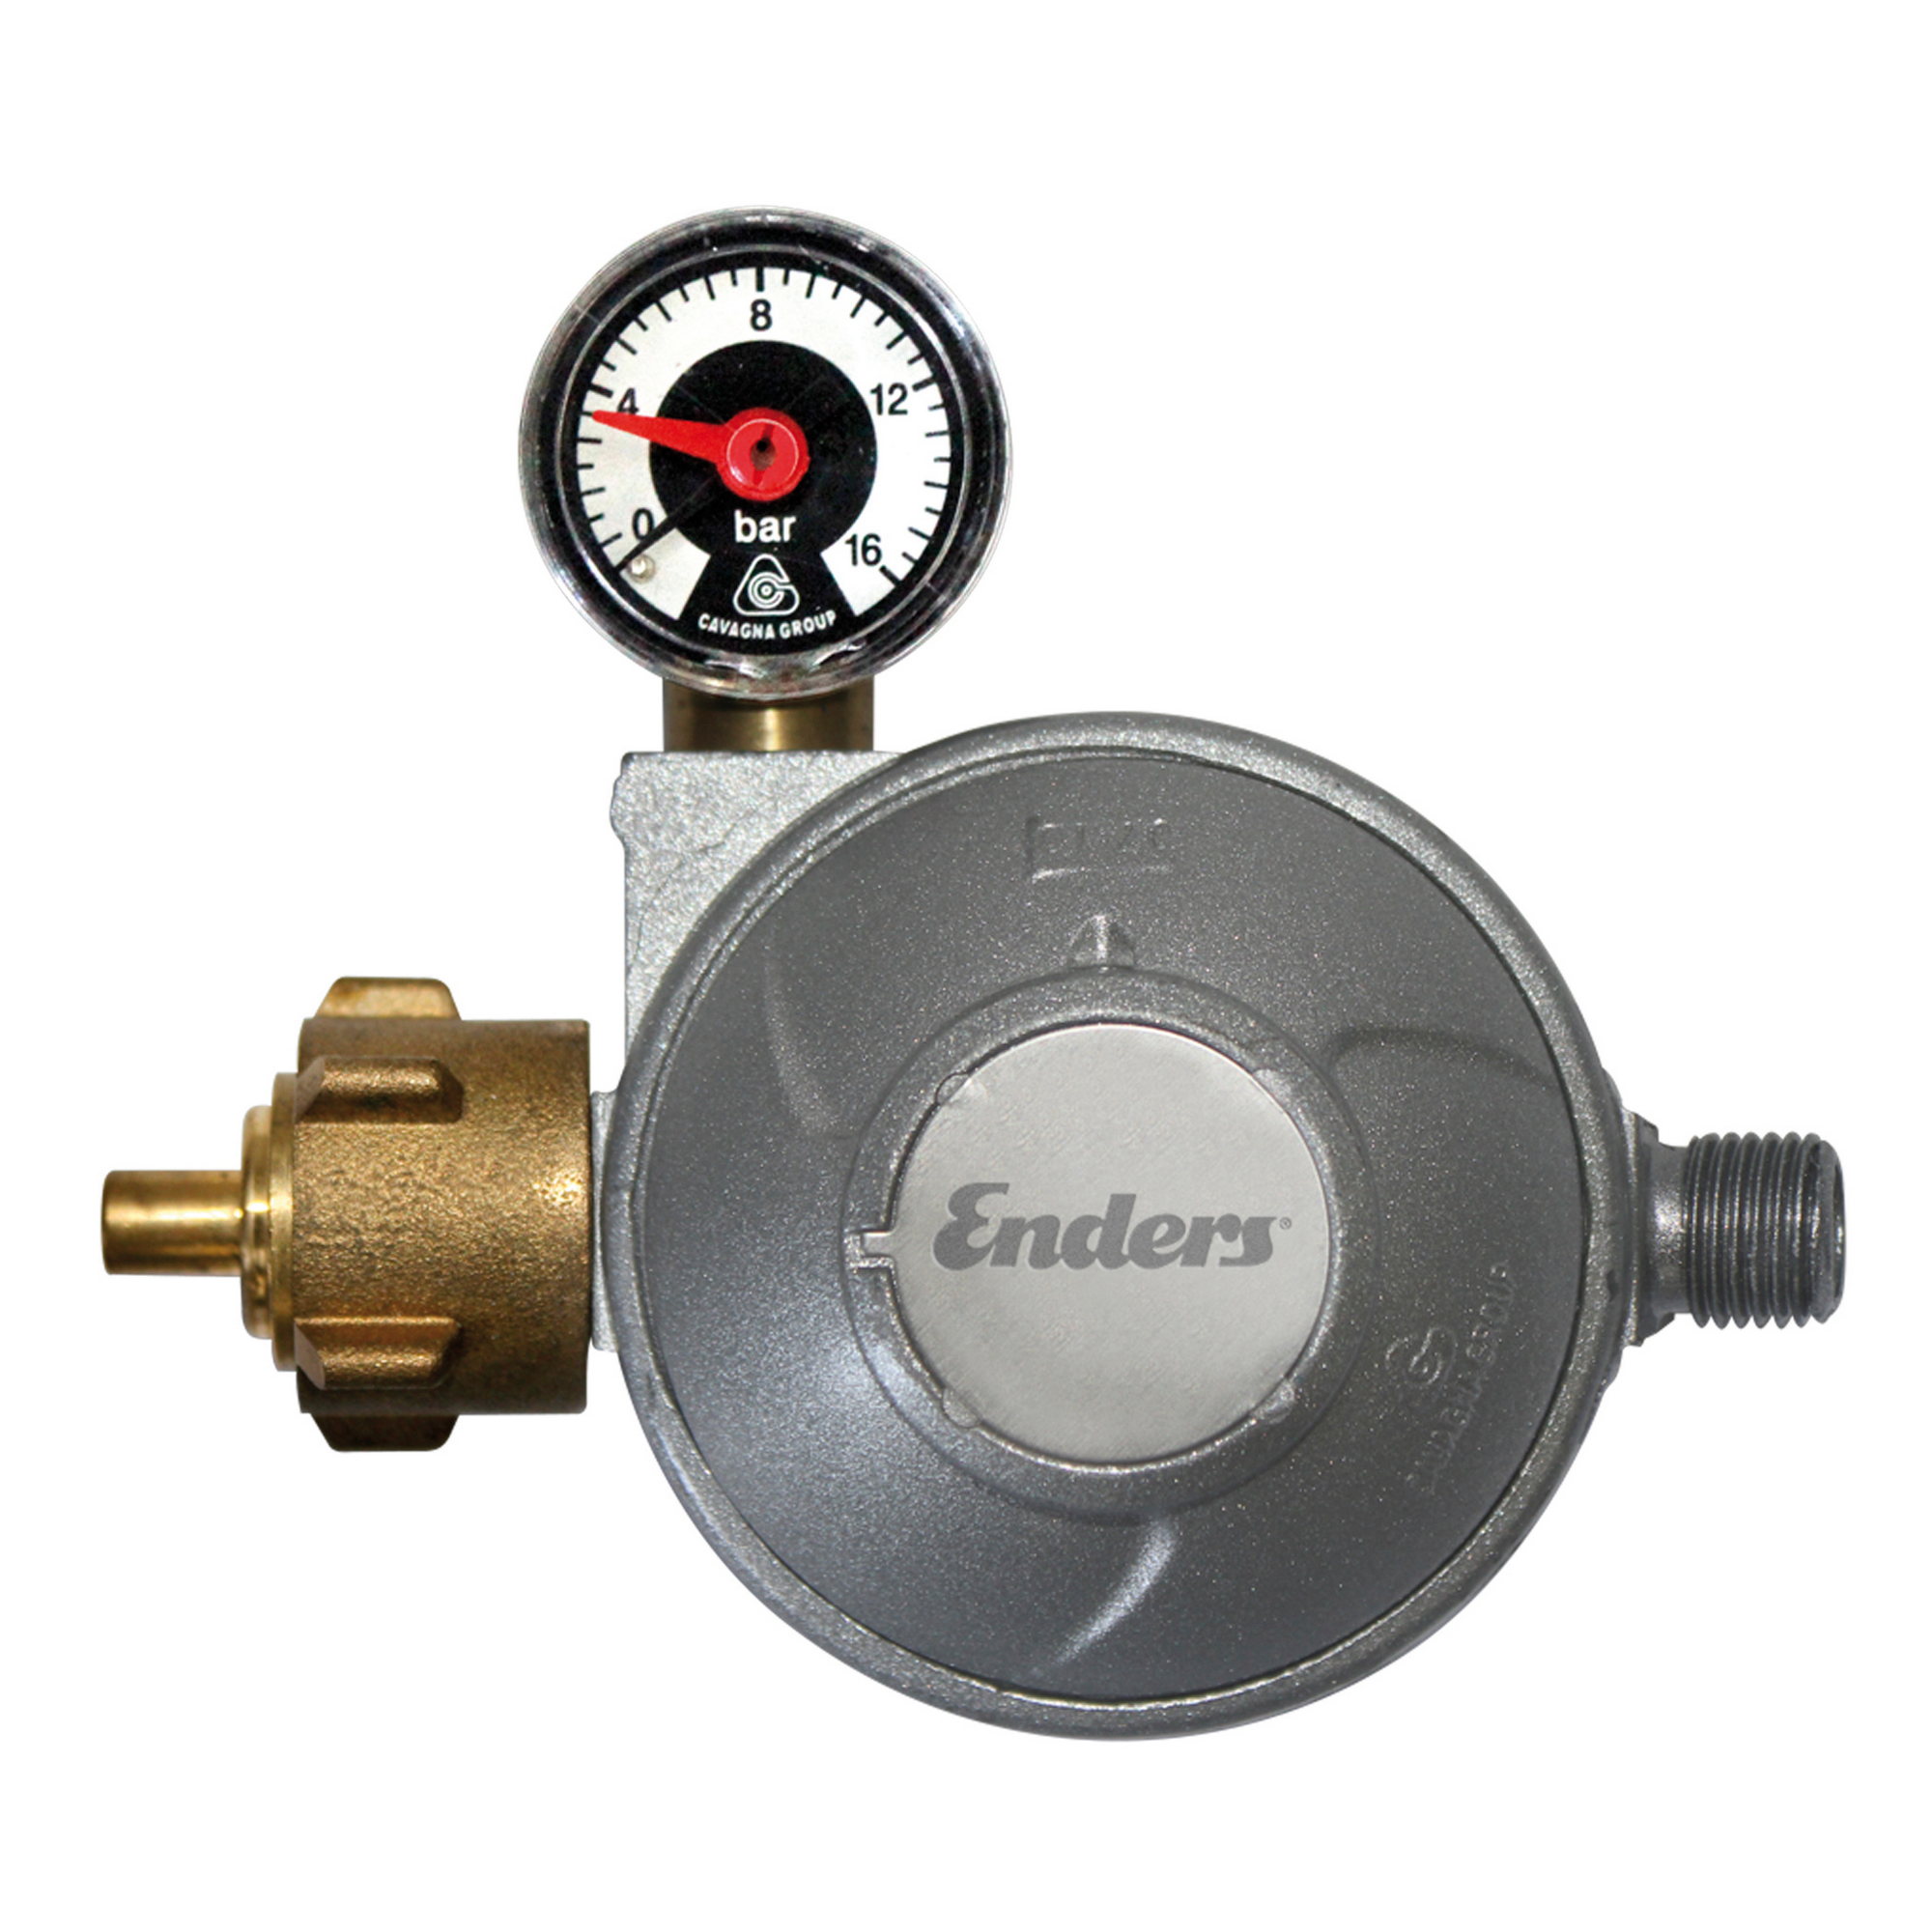 Gasdruckregler mit Manometer und Schlauchbruchsicherung 50 mbar + product picture